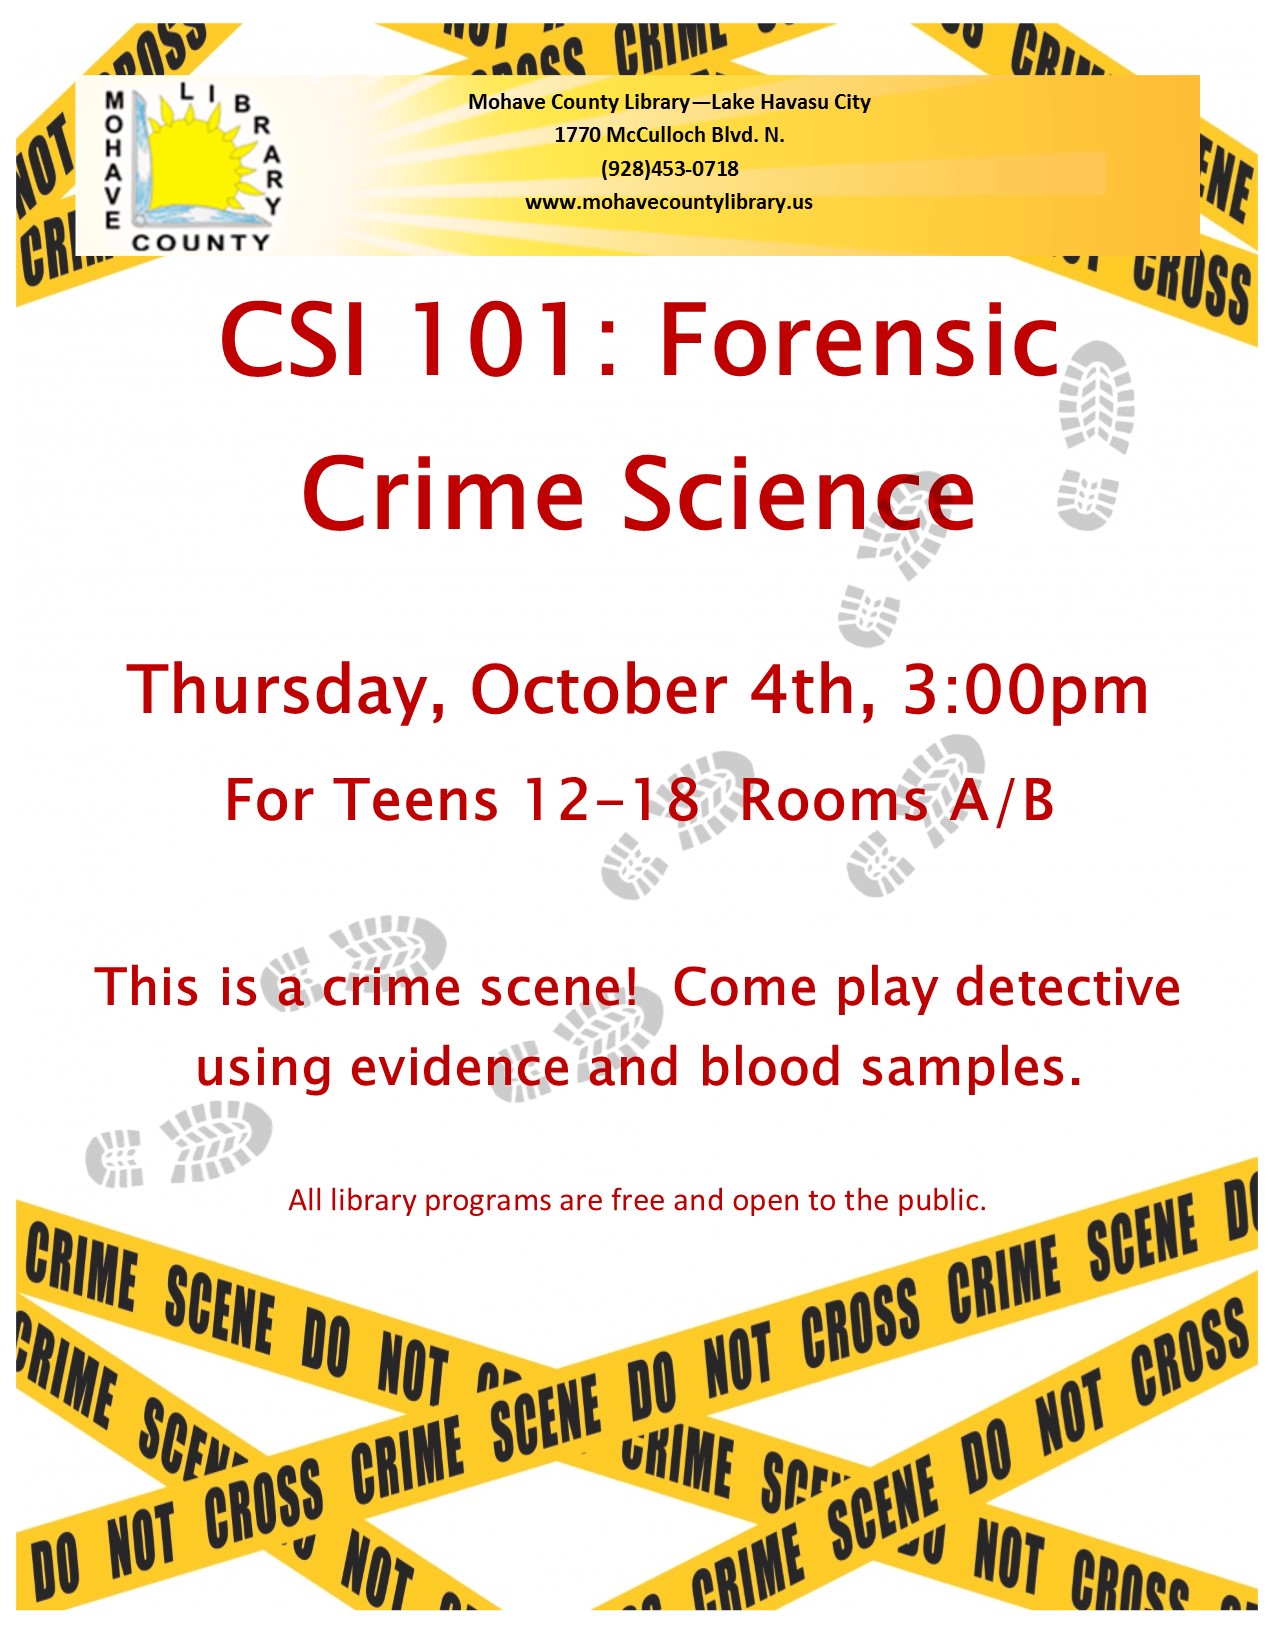 CSI 101: Forensic Crime Scene